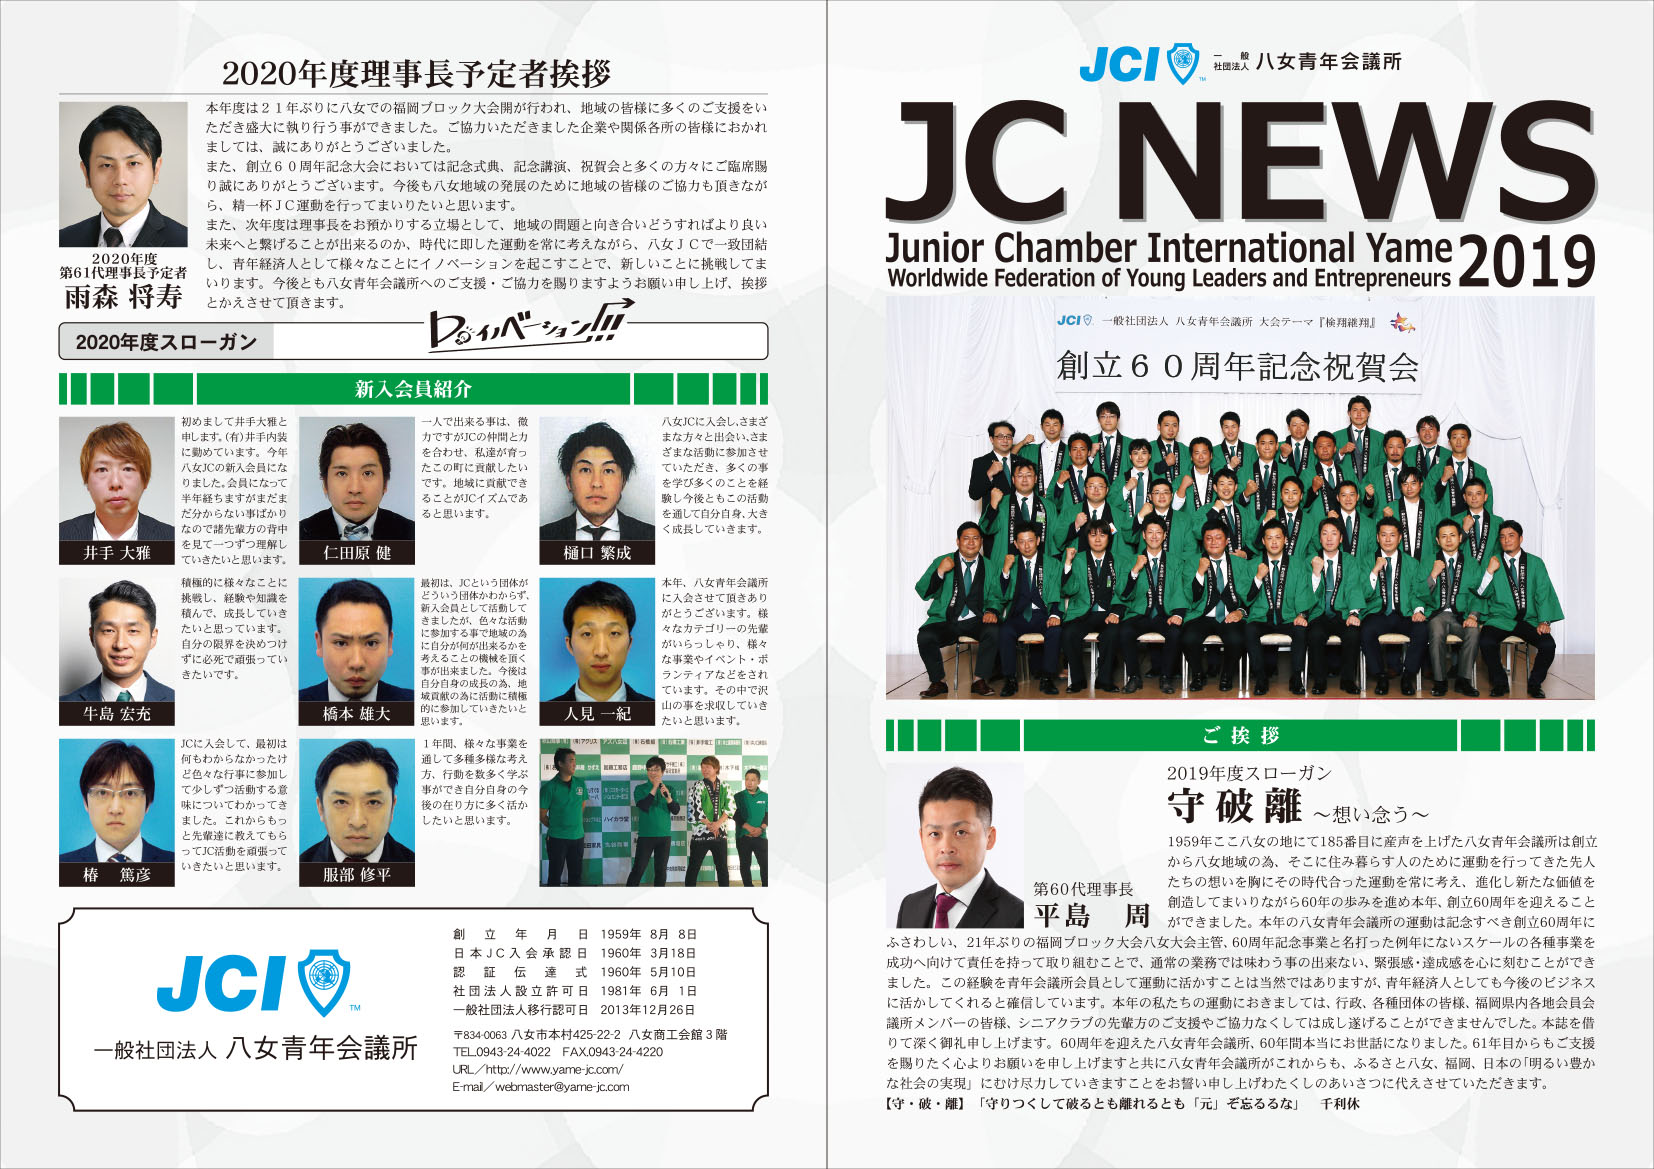 2019年度事業(JCニュース)